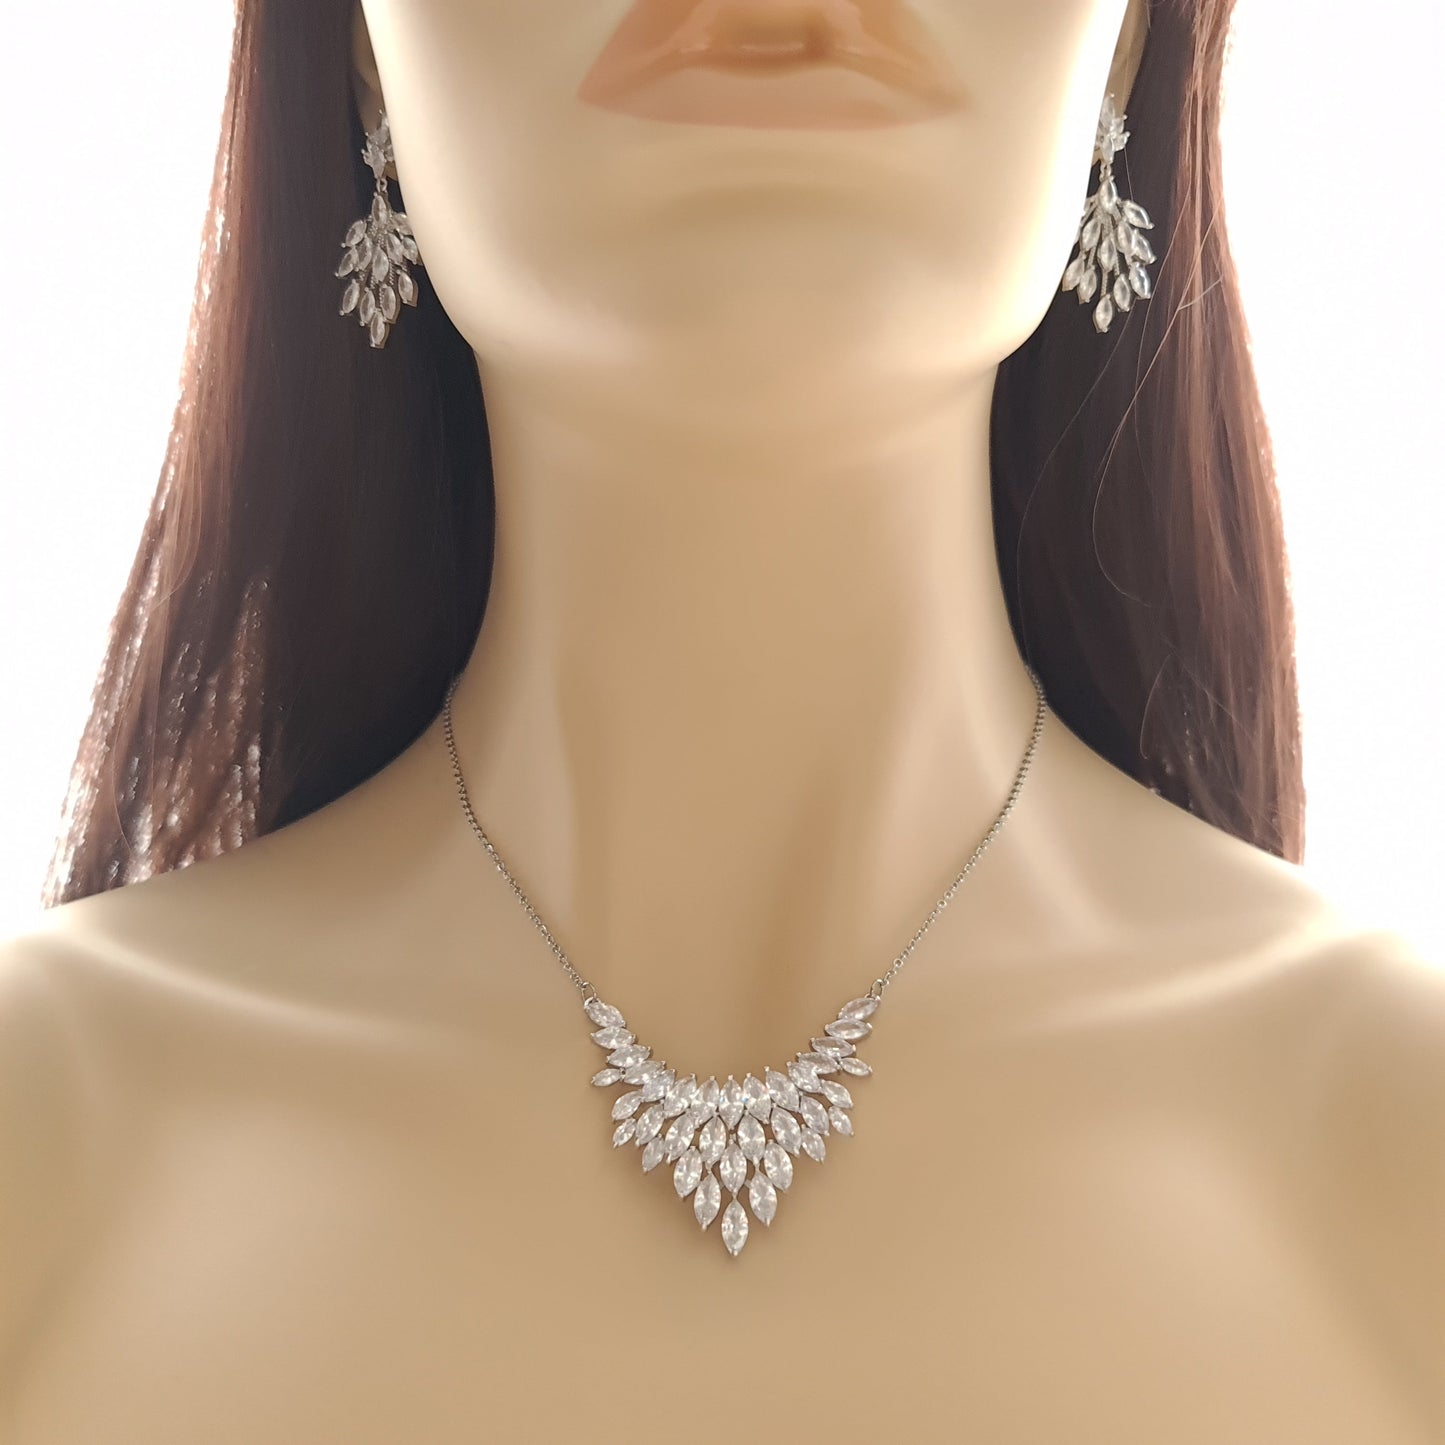 Rose Gold Jewelry Set of Earrings, Necklace, Bracelet -Belle